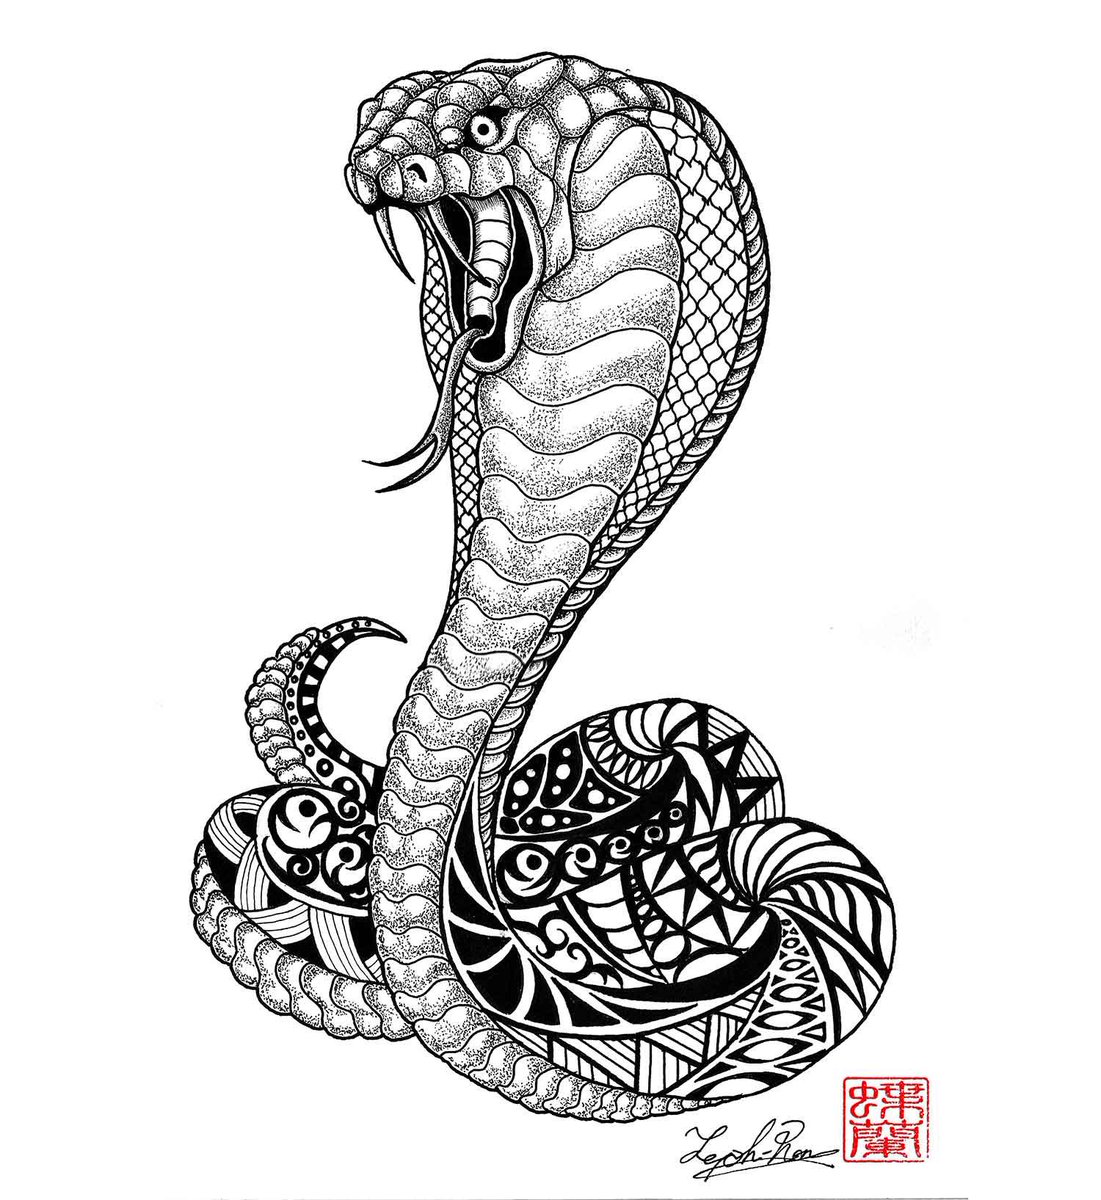 コブラ のイラスト マンガ作品 72 件 Twoucan